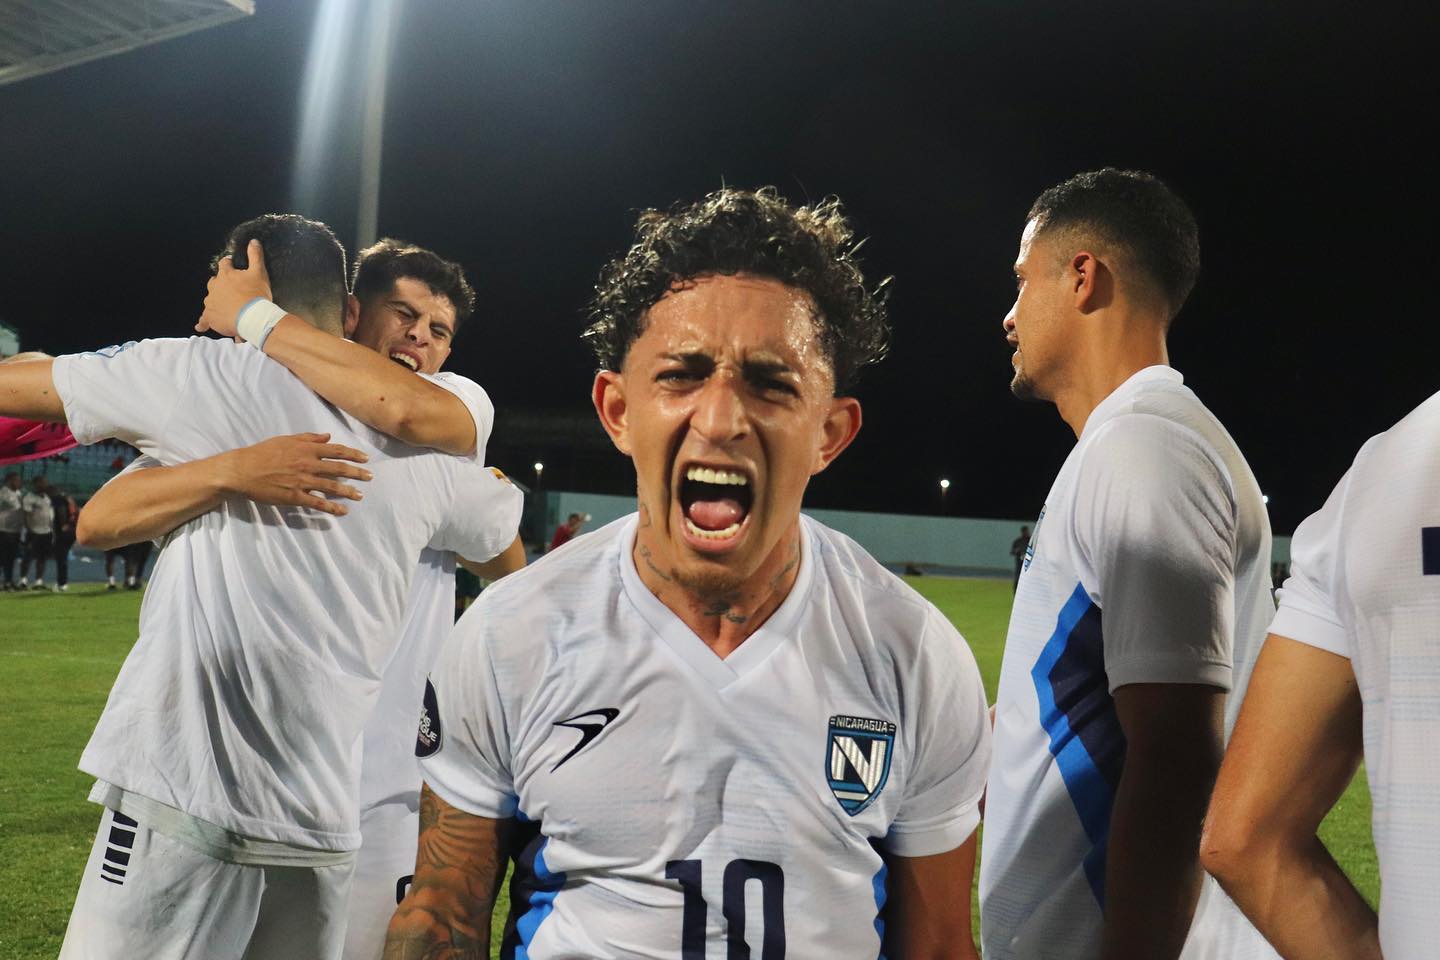 Ariagner Smith, al minuto 27’, marcó el tanto que “mandó” a Nicaragua a la Liga A de la CONCACAF Nations League, y obtener un cupo directo a la Copa Oro 2023